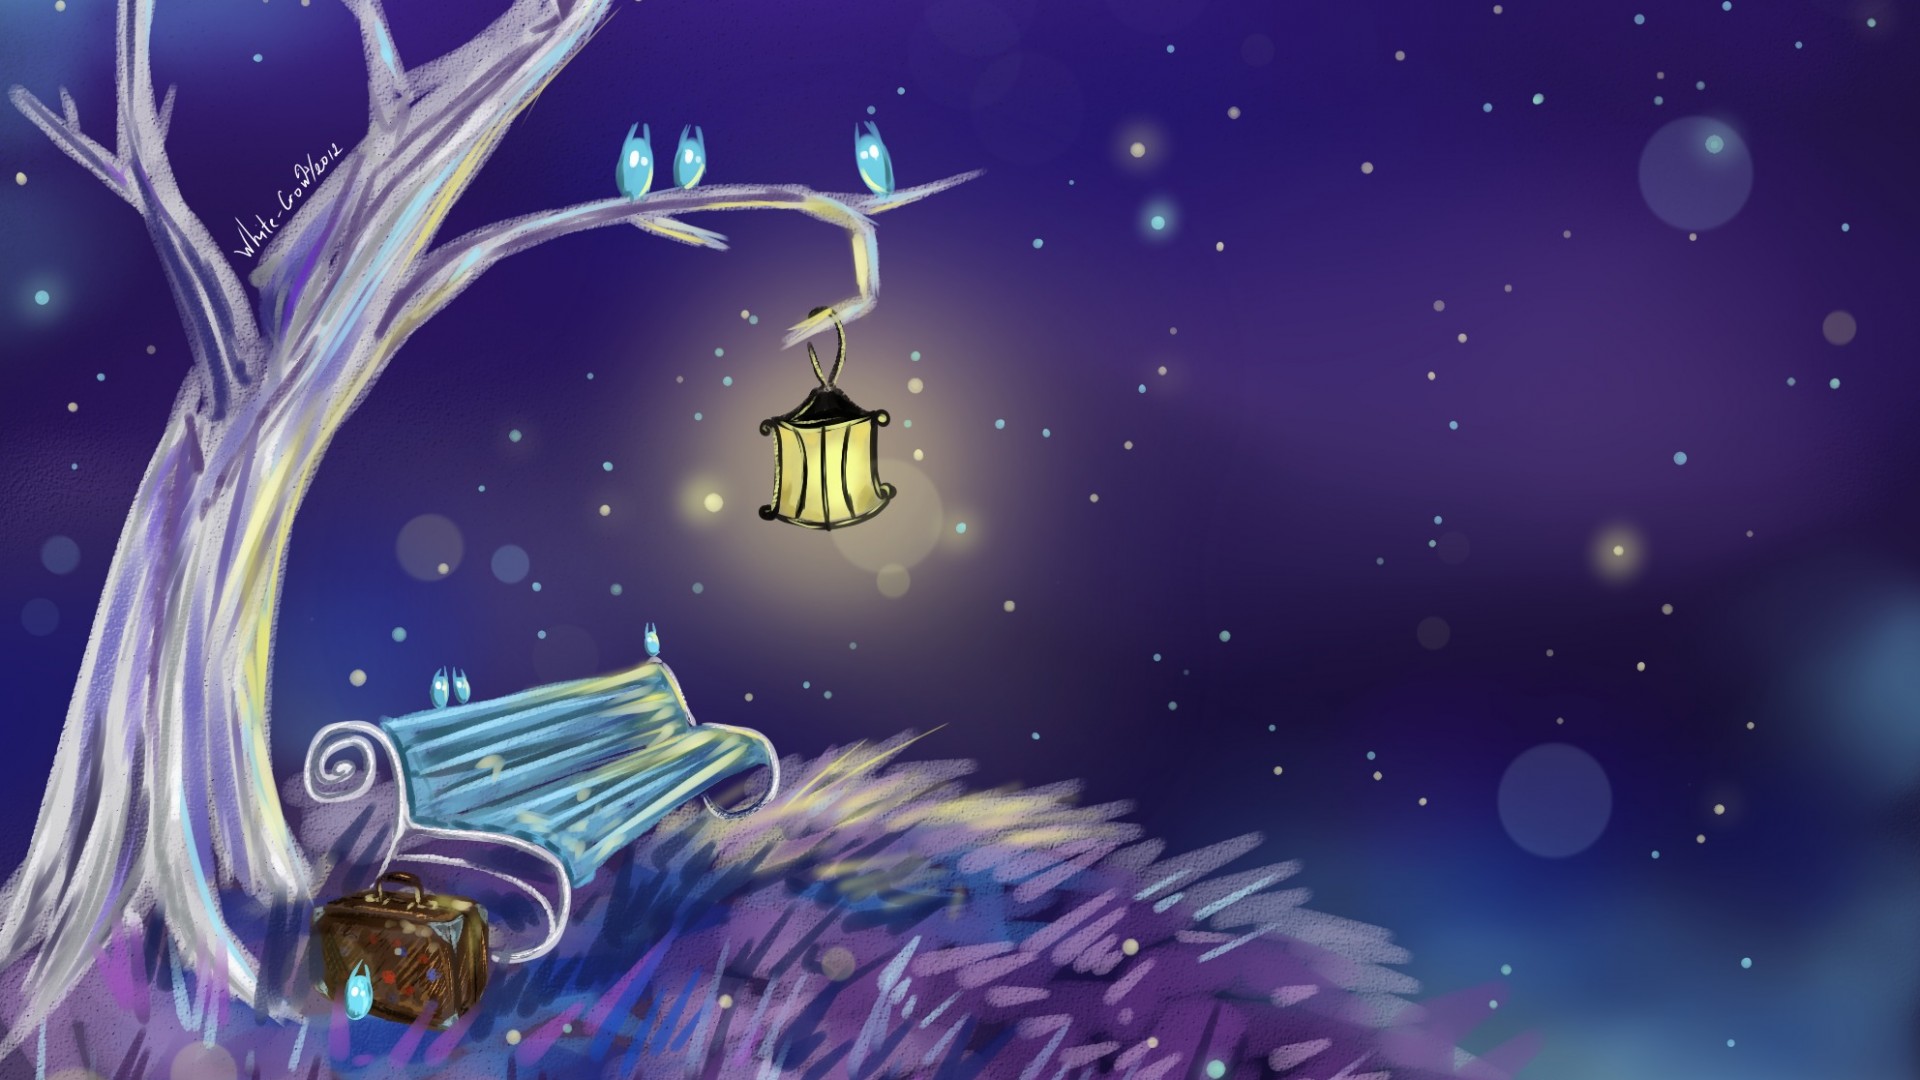 树，板凳，灯笼，唯美梦幻夜空风景壁纸